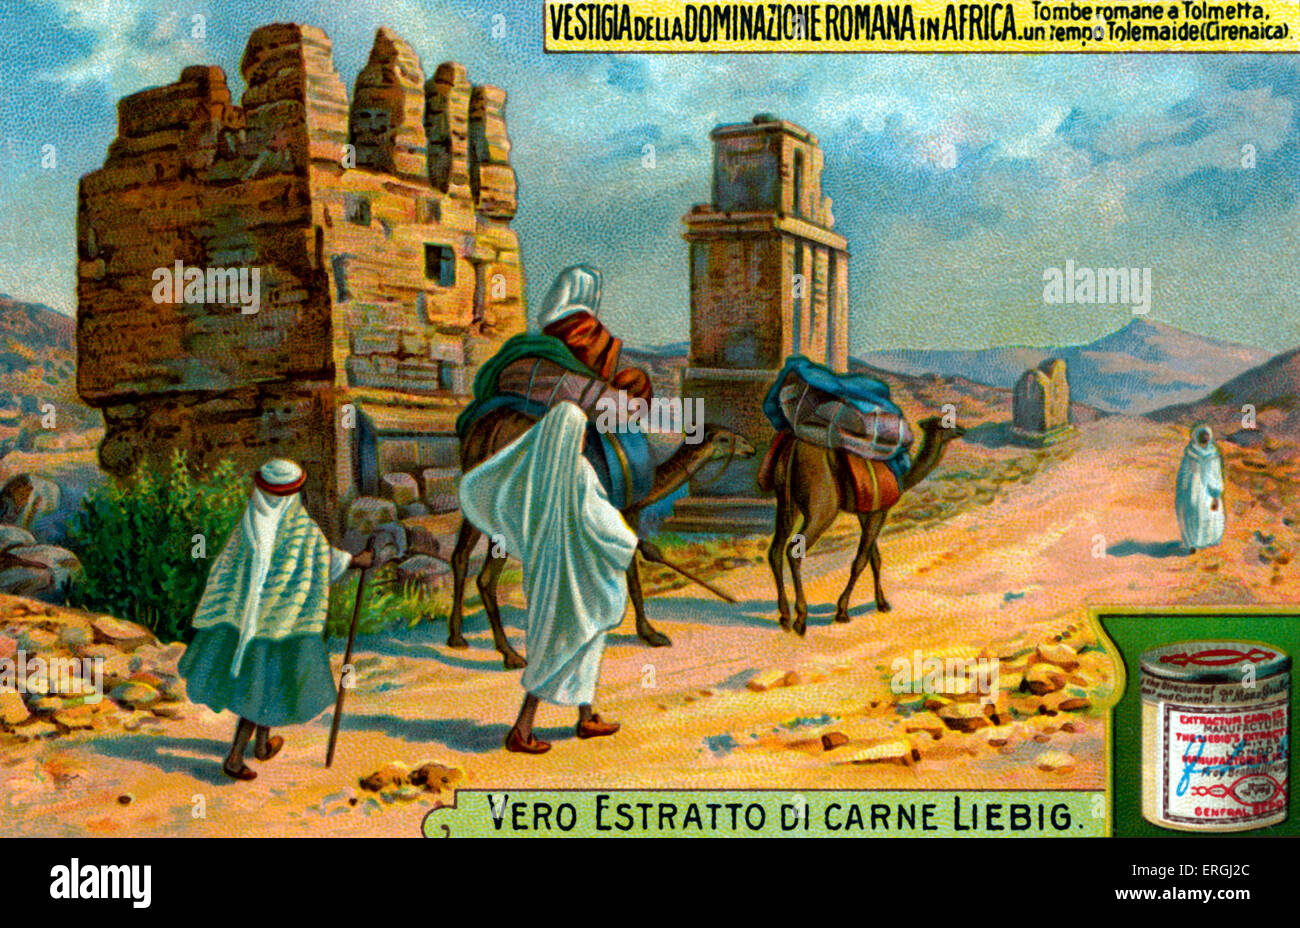 Ptolémaïs, la Cyrénaïque (actuelle Libye). Ancienne capitale, peut-être nommé d'après Ptolémée III Euergetes. Nommé Tolmeta en roman Banque D'Images